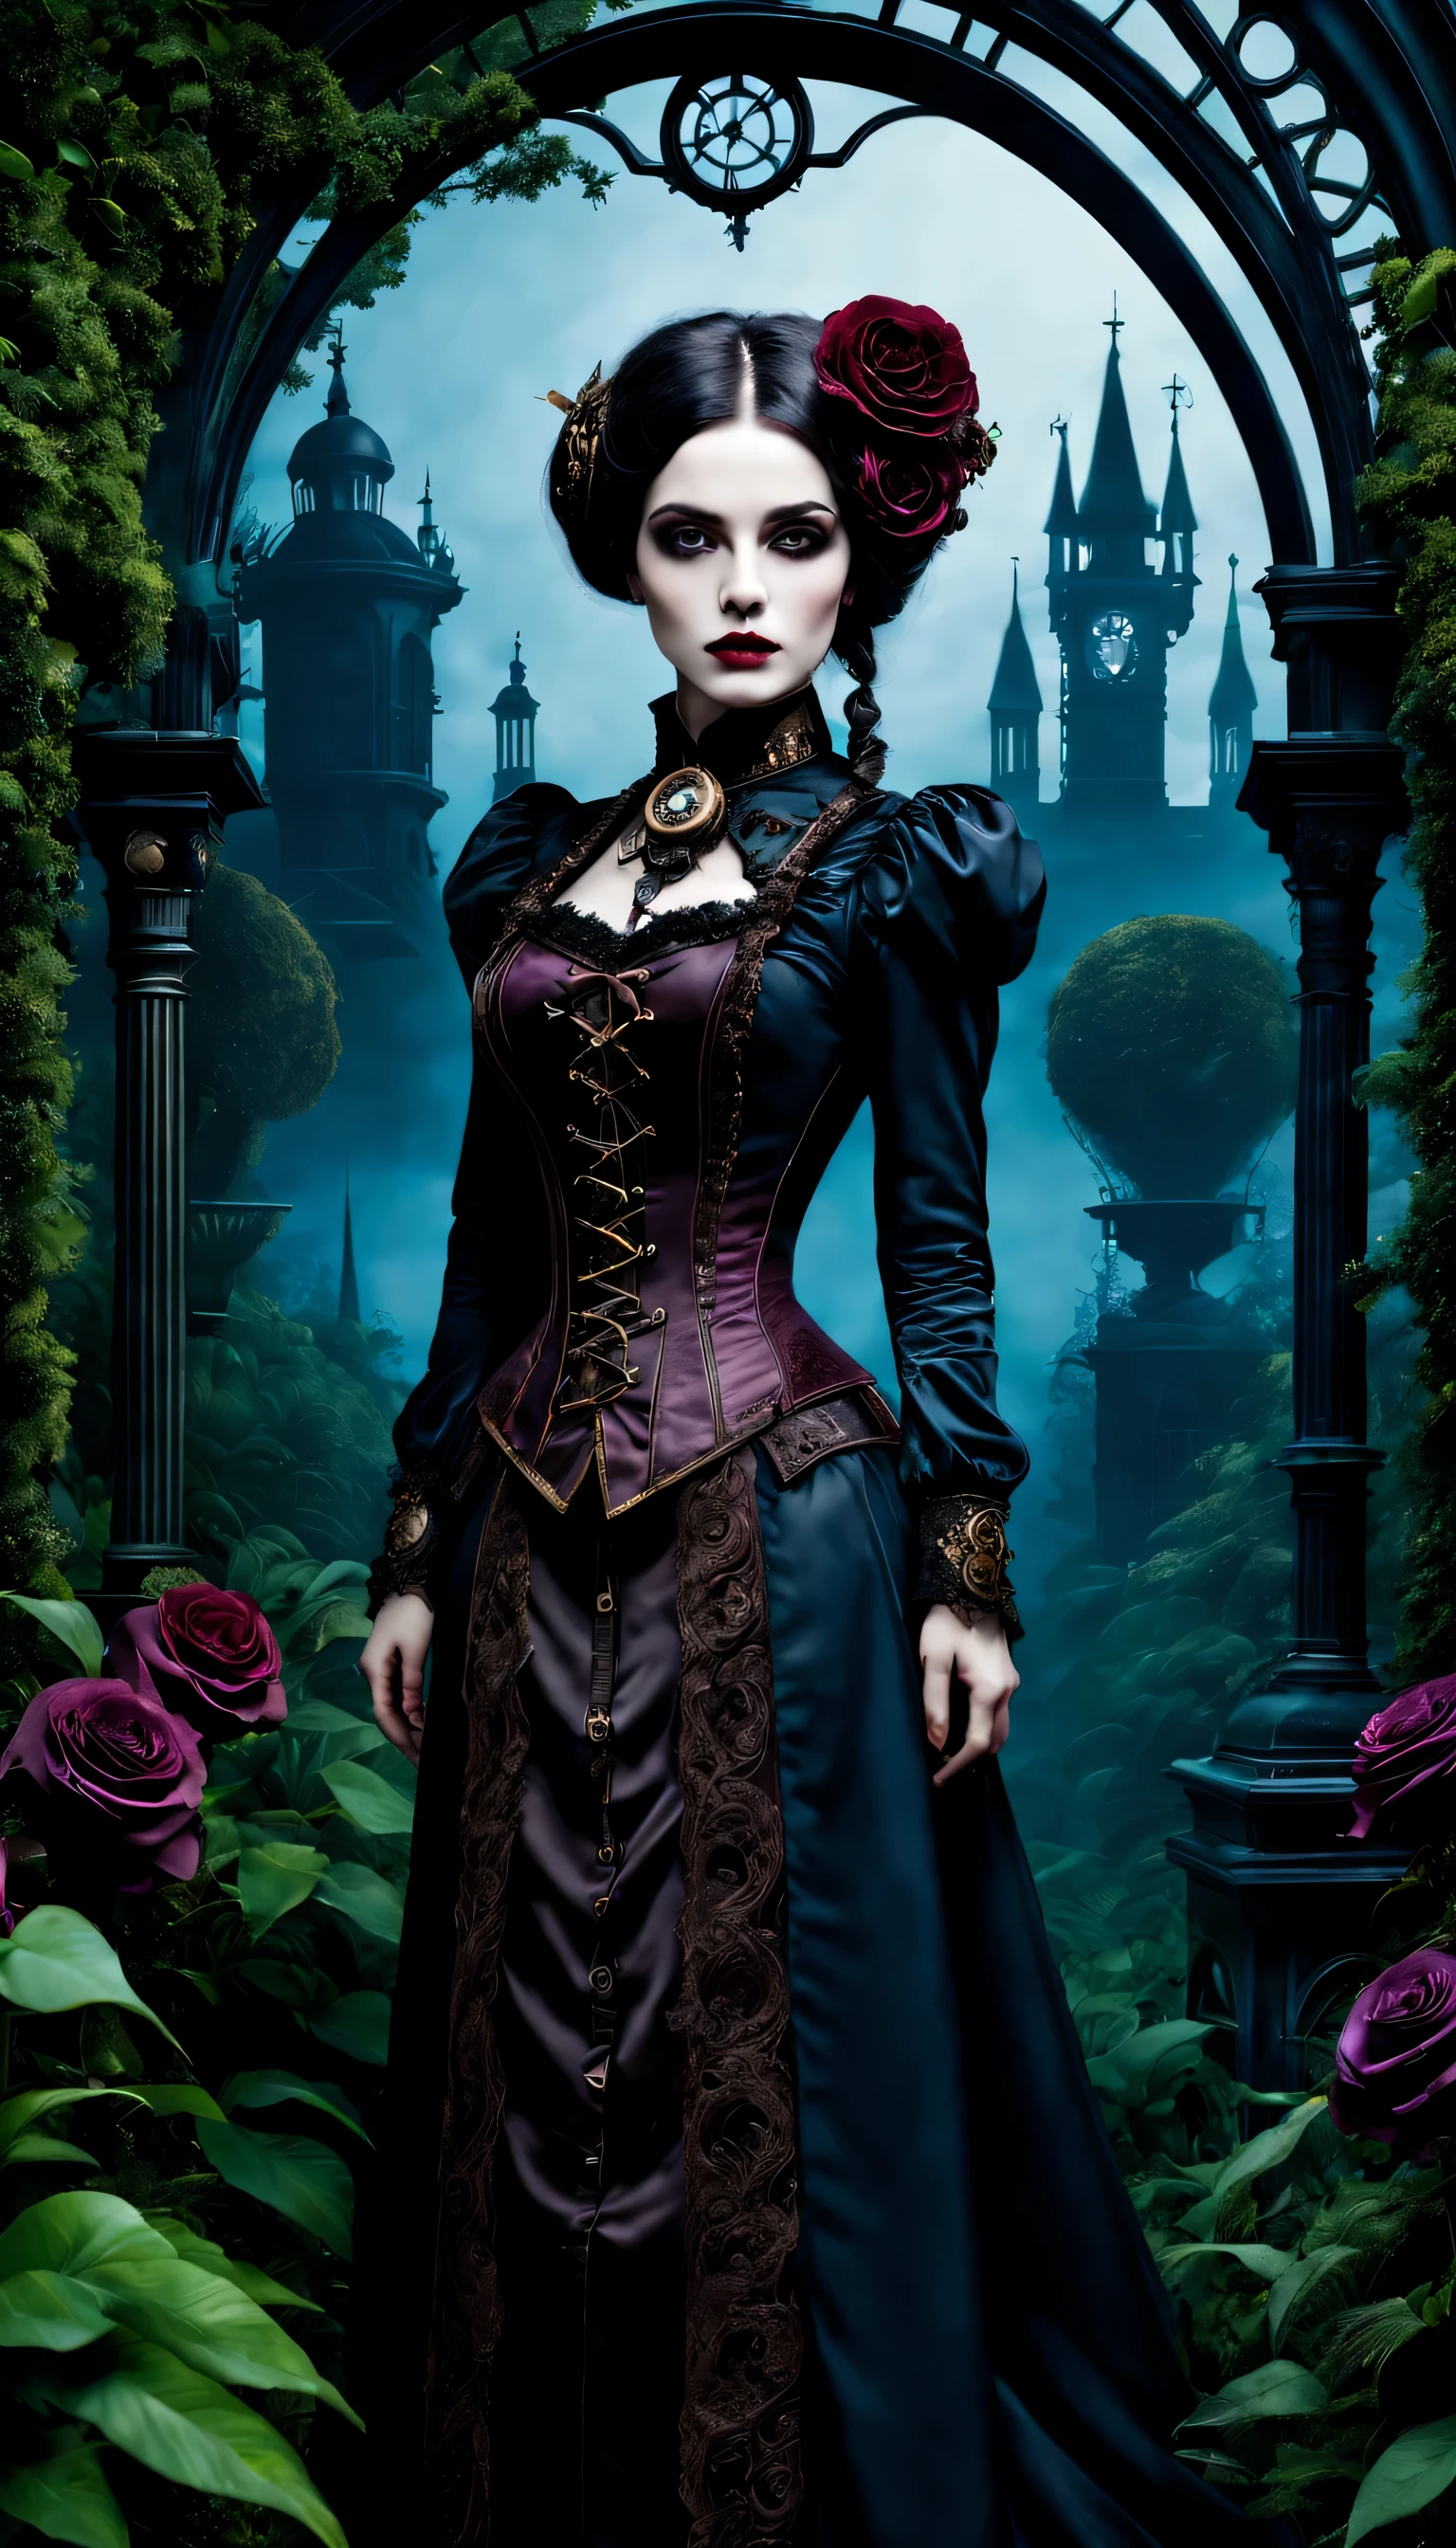 (고딕 미학,빅토리아 스타일,스팀펑크,어두운,낭만적인,잊을 수 없는,) In a 어두운, 신비한 환경, a girl with a 빅토리아 스타일 outfit stands in a gothic garden. 그녀는 아름답고 세밀한 눈을 가지고 있어요, 눈길을 사로잡는 긴 속눈썹으로. 입술도 정말 섬세해요, 그녀의 매혹적인 존재감을 더해주는. 여자 얼굴이 정말 디테일하네요, 절묘한 얼굴 특징은 그녀의 우아함을 보여줍니다. 她散发着神秘和낭만적인气息. 정원에는 무성한 식물이 가득합니다, 자란 식물, creating a 잊을 수 없는 atmosphere. 기계 요소와 얽힌 식물, giving the garden a 스팀펑크 twist. 위의 하늘은 깊다, 어두운 blue, 고딕적인 분위기를 더해줍니다.. 예술 작품은 최고 품질입니다, 최고 해상도에서도 복잡한 디테일을 확인하세요, 예를 들어 4K 또는 8K. 모든 요소가 매우 세밀하게 포착됩니다., 사실적인 느낌을 연출해보세요. 조명은 스튜디오 조명을 연상시킵니다., 드라마틱한 그림자가 현장의 신비로운 분위기를 더욱 돋보이게 합니다.. 작품에 사용된 밝은 색상, with a color palette that leans towards 어두운 and moody tones. 진홍색 색조, 보라, 검정색이 이미지를 지배함, adding to the 고딕 미학. The overall color scheme contributes to the 잊을 수 없는 and 낭만적인 atmosphere. 이 고딕풍의 장면에서, 빅토리아 시대 요소의 조합, 스팀펑크 influences, and 어두운 aesthetics creates a captivating visual experience. 기술이 빅토리아 시대의 우아함과 신비로움과 조화를 이루는 세계로 시청자를 안내합니다., 상상력을 자극하다，무한한 가능성을 가져오세요.